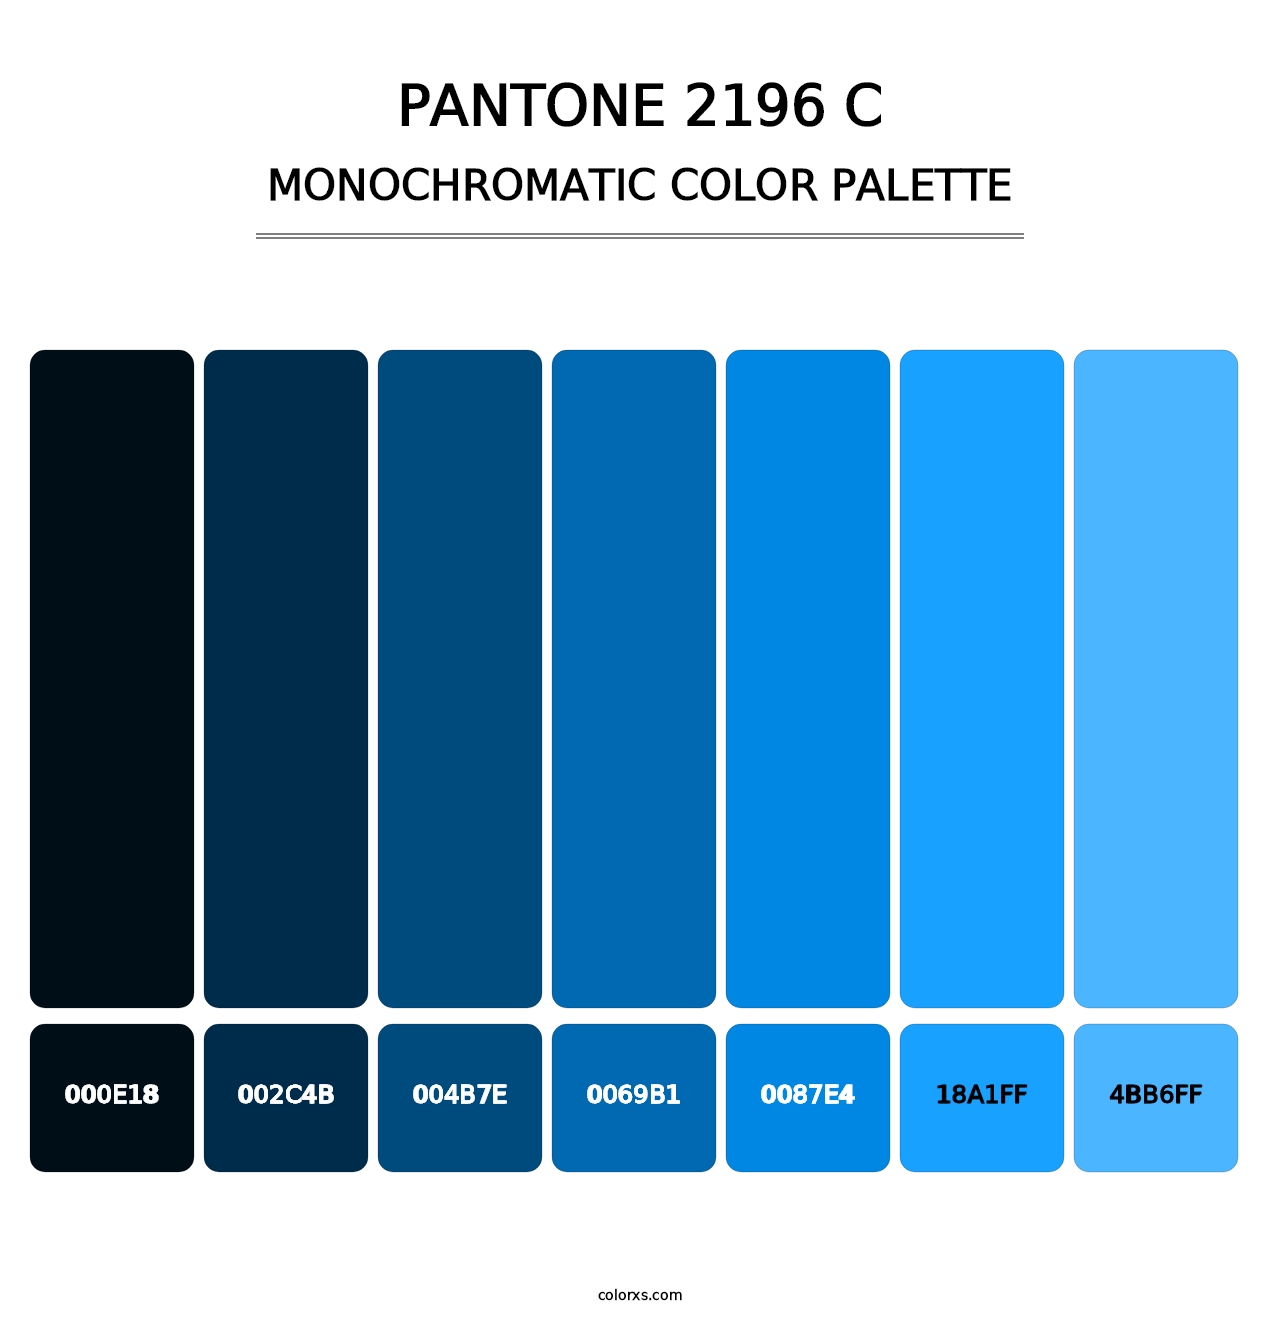 PANTONE 2196 C - Monochromatic Color Palette